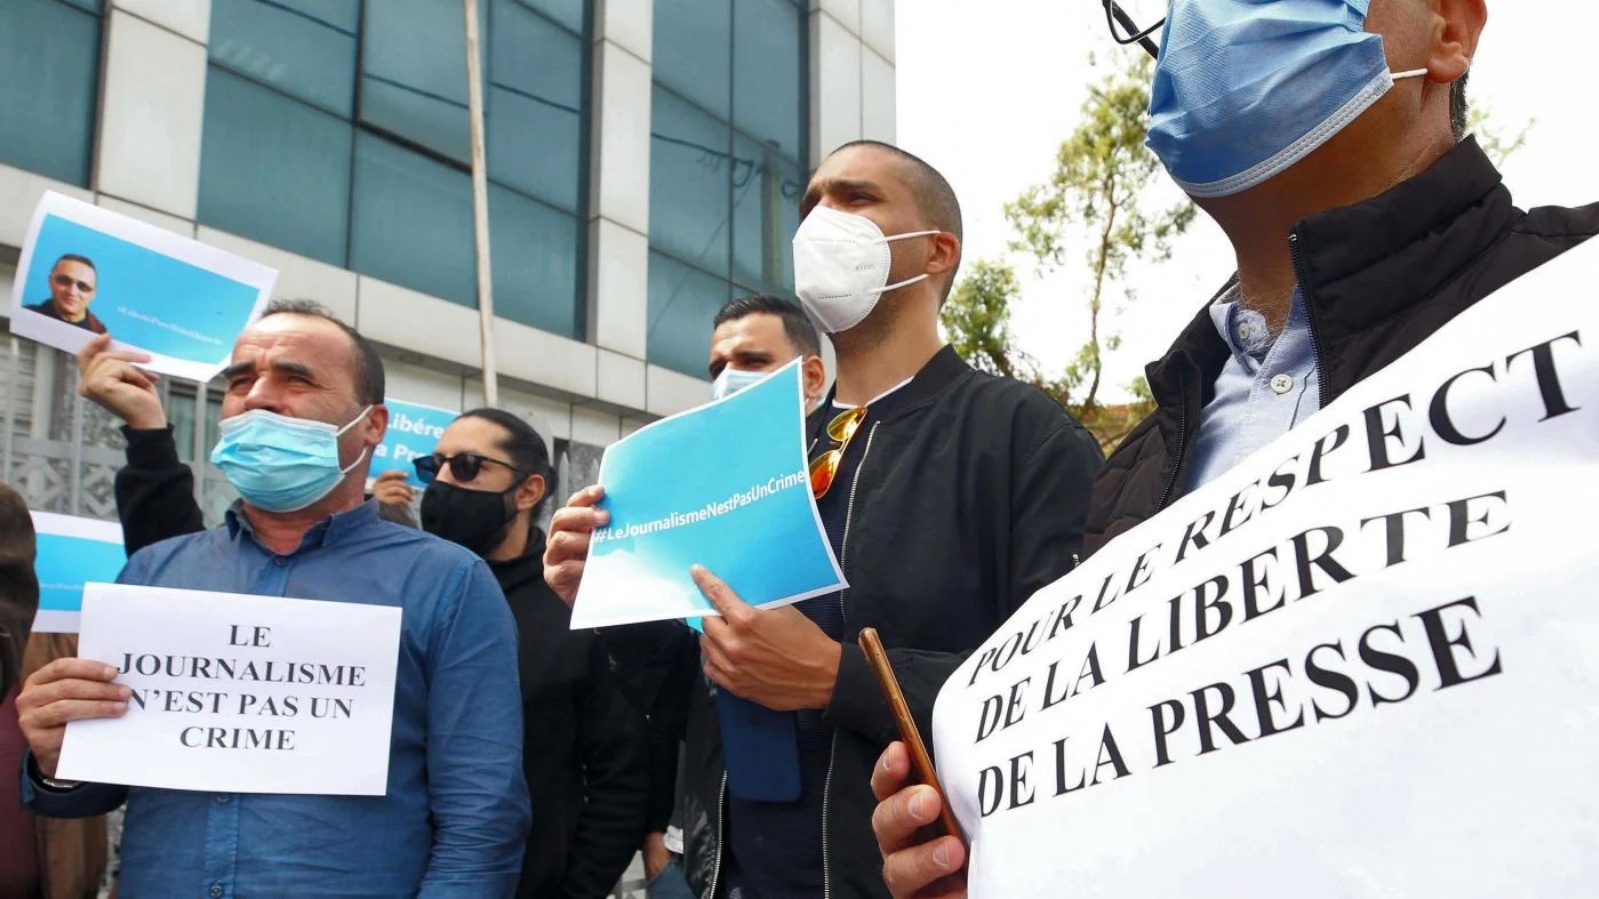 مظاهرة أمام مقر صحيفة ليبرتي الناطقة بالفرنسية في إحدى ضواحي العاصمة الجزائرية في 25 أبريل 2021